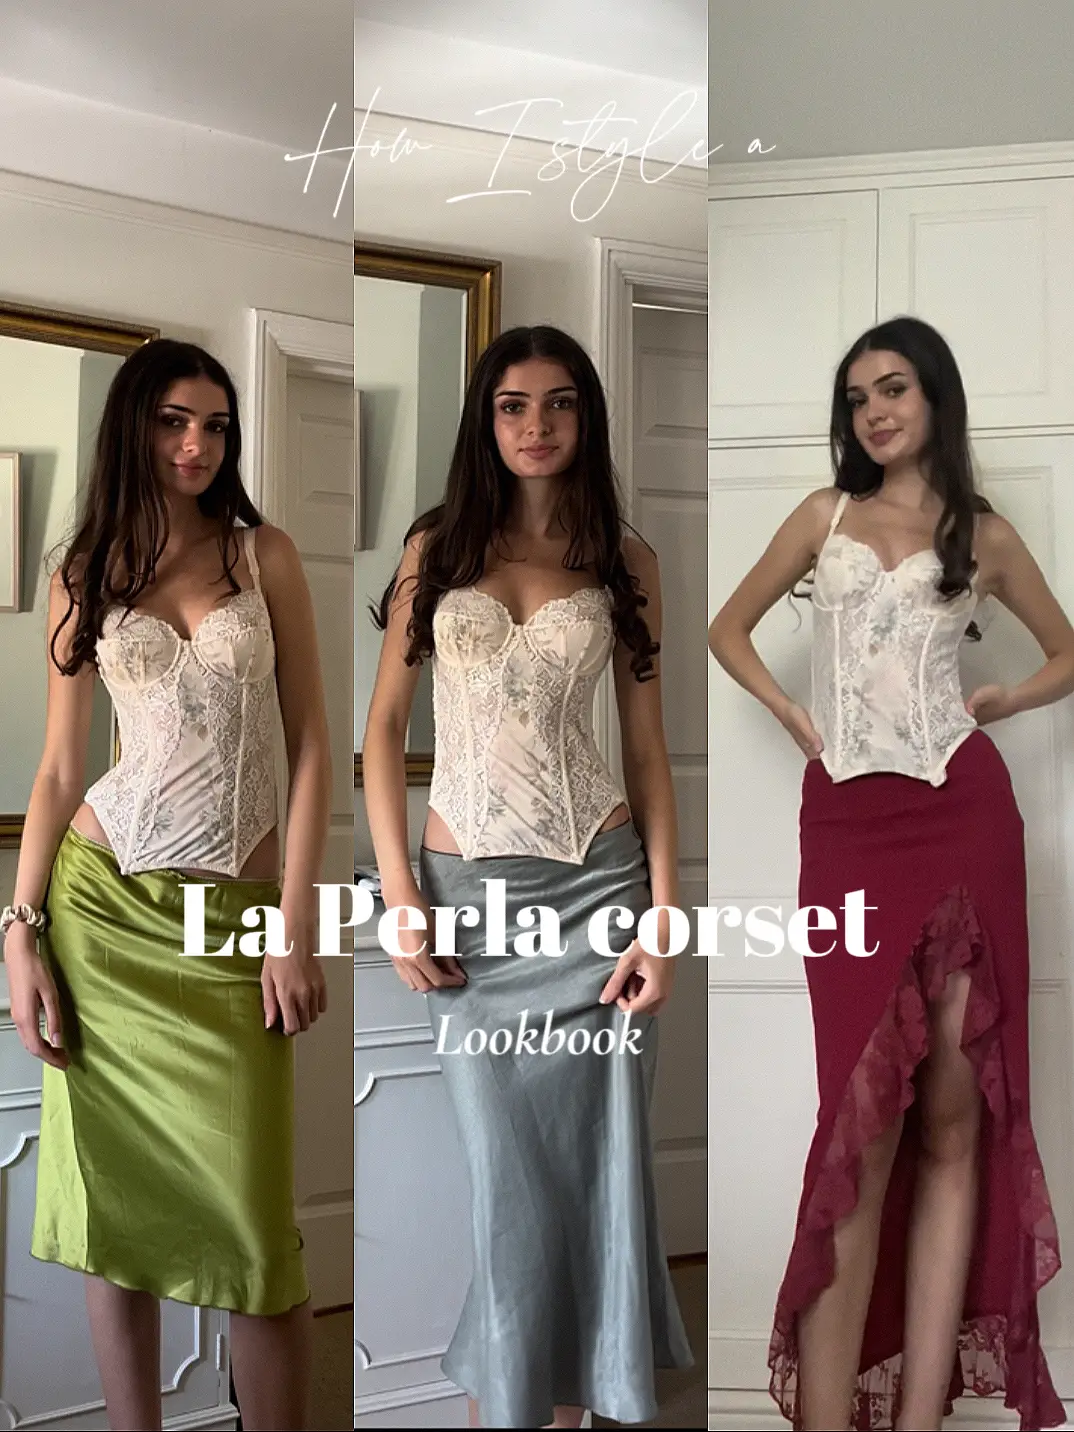 How I style a La Perla corset, Lookbook